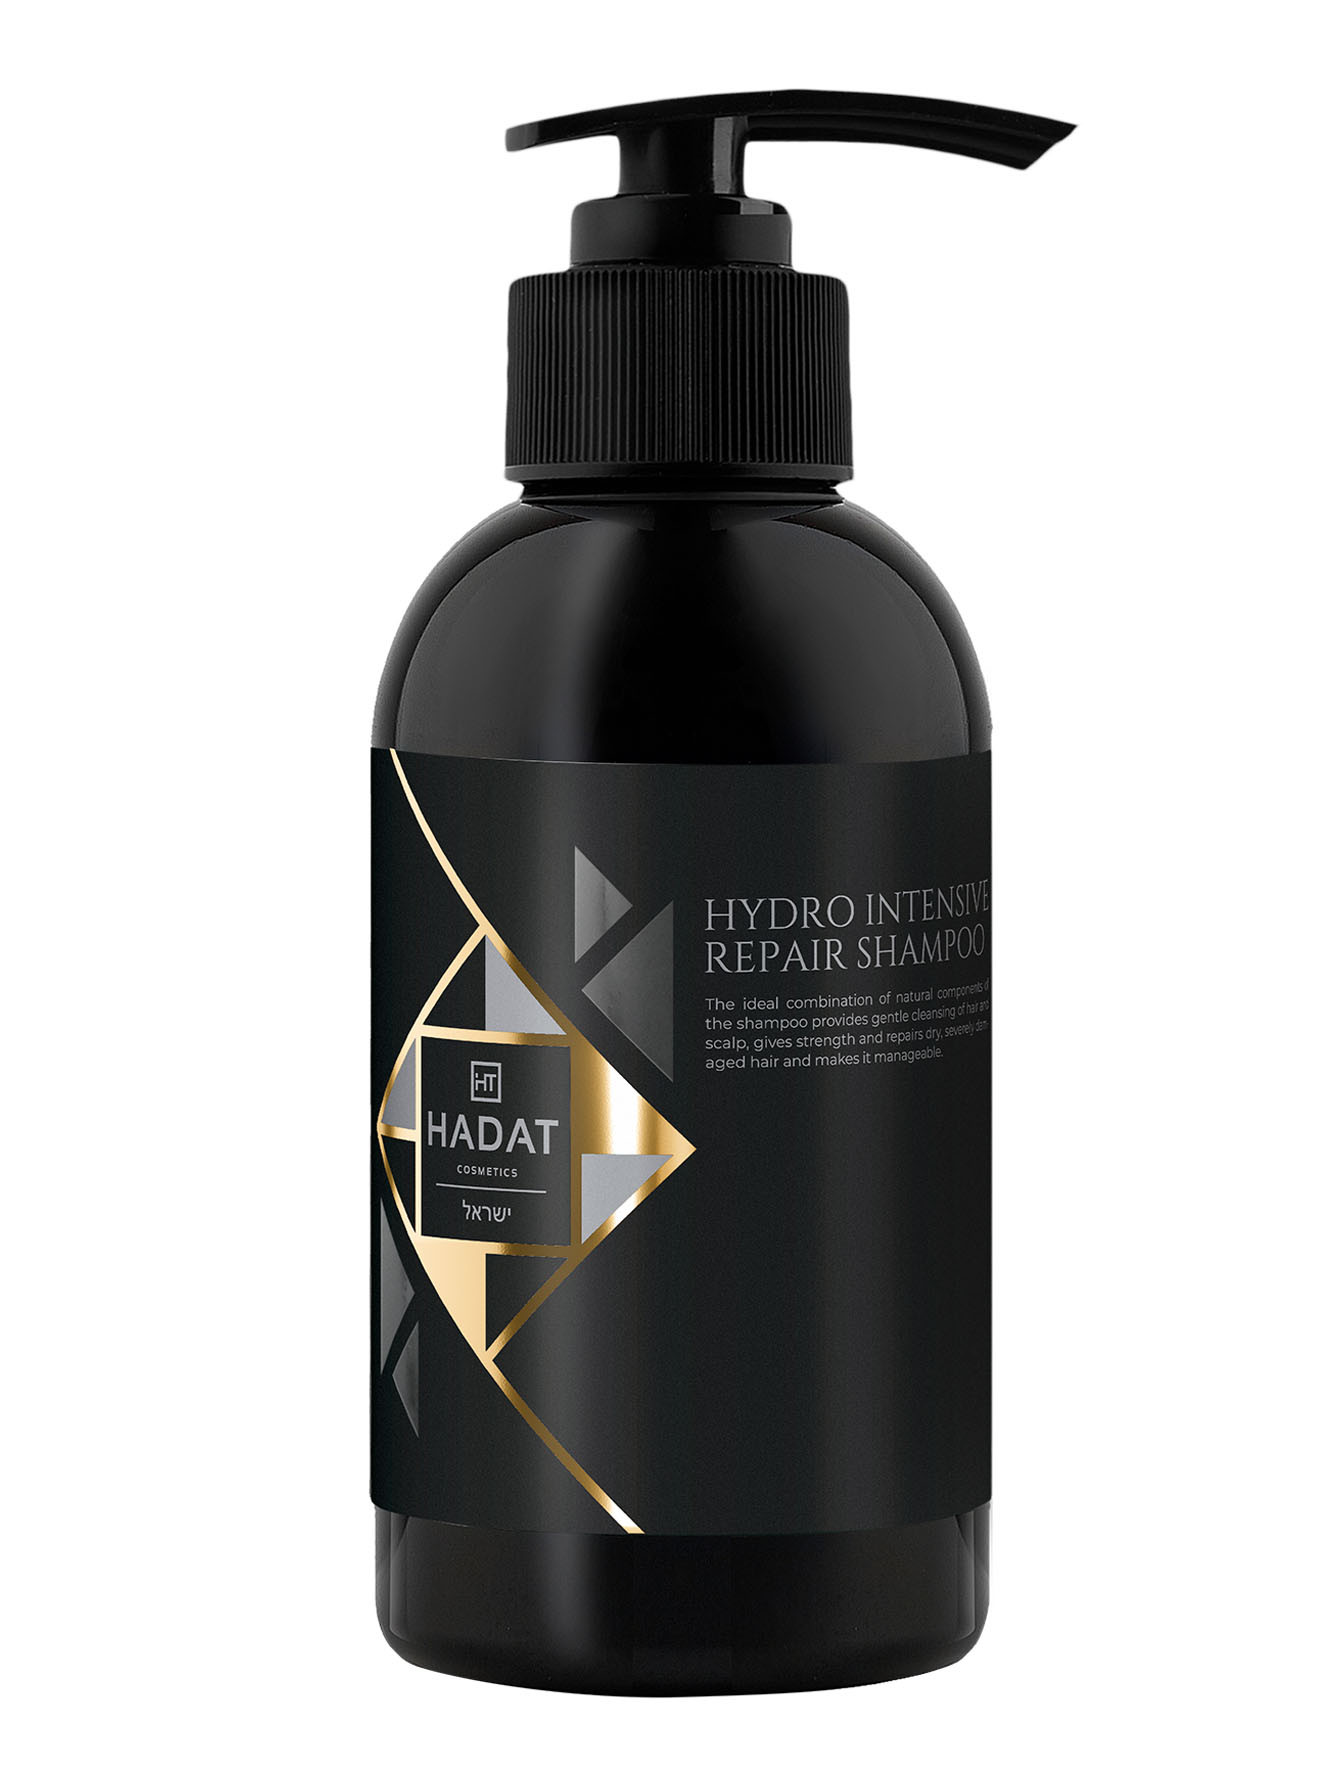 Восстанавливающий шампунь Hydro Intensive Repair Shampoo, 250 мл - Общий вид